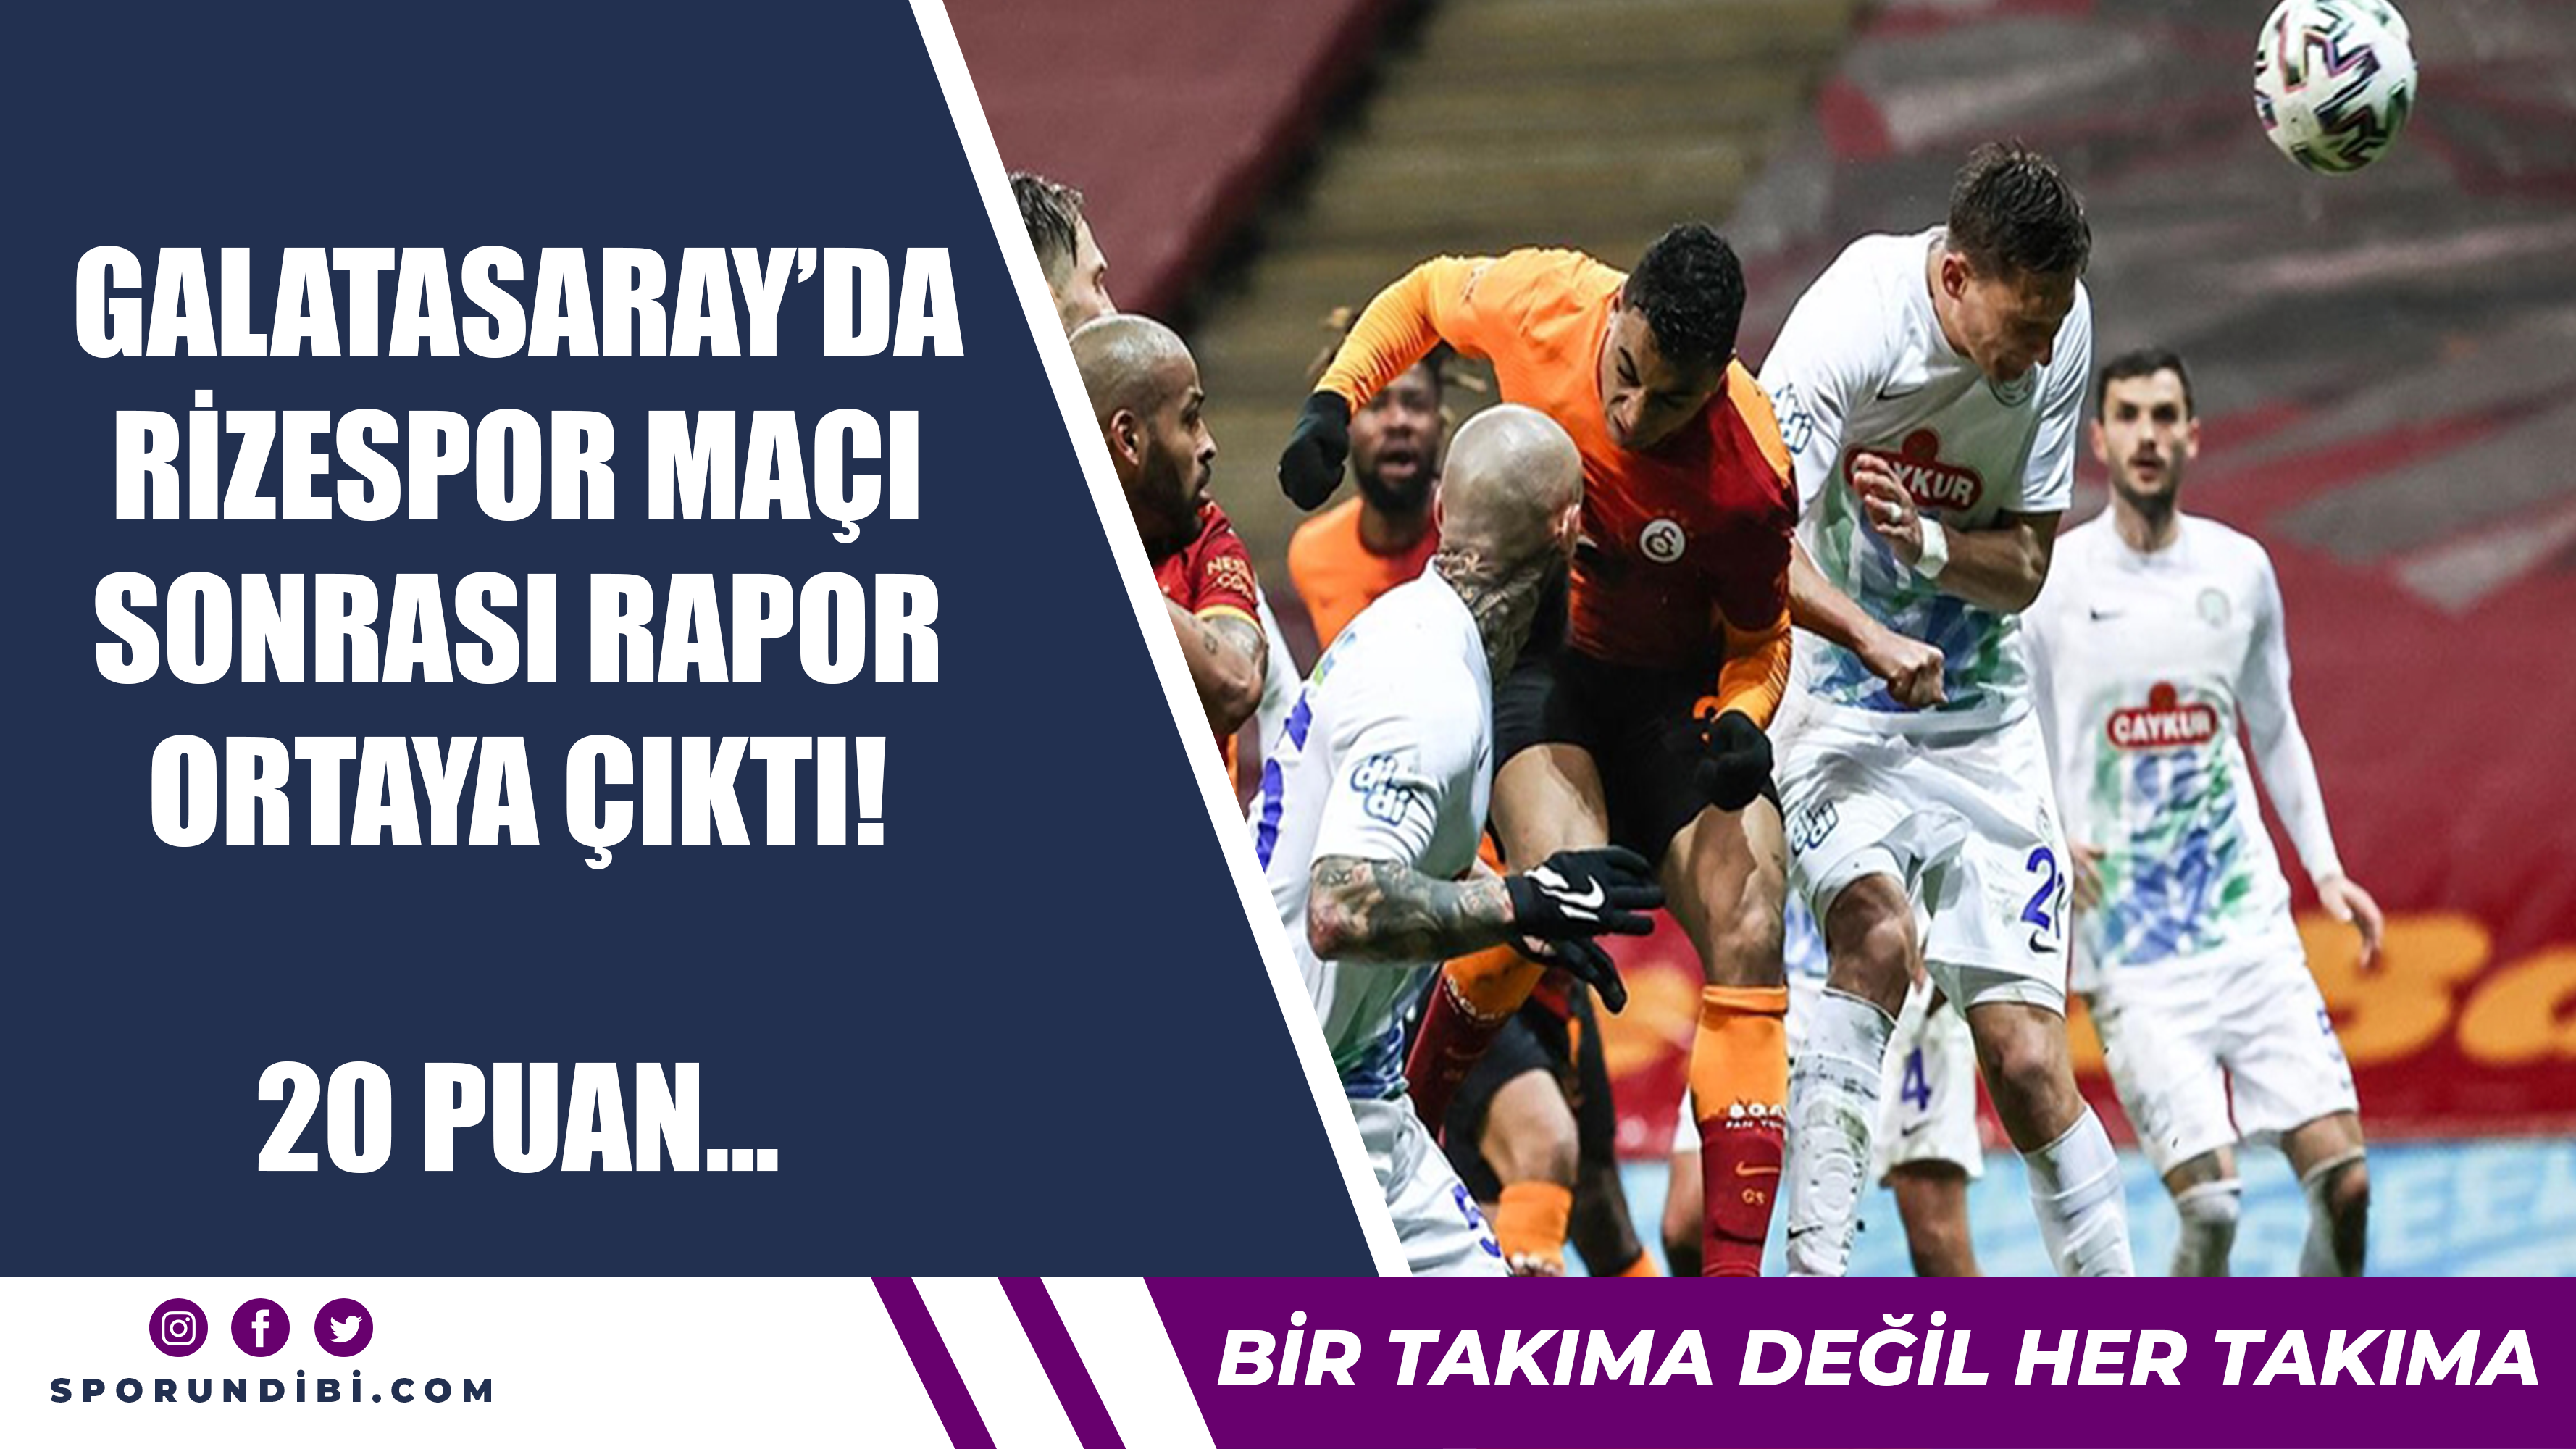 Galatasaray'da Rizespor maçı sonrası rapor ortaya çıktı! 20 puan...